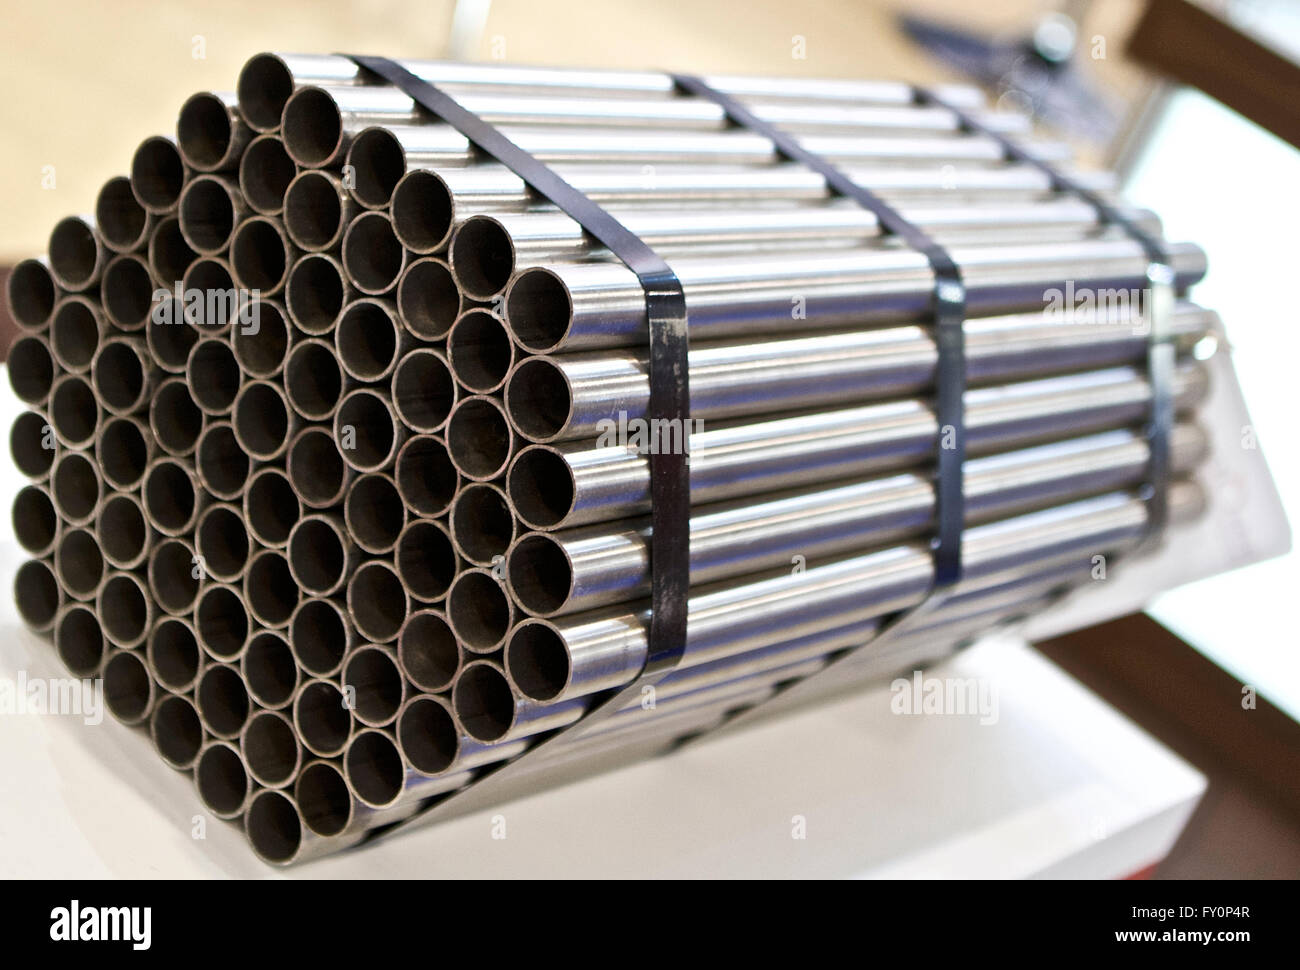 Verpackung Rohr in Form von Hexaeder, Produkte Stockfotografie - Alamy